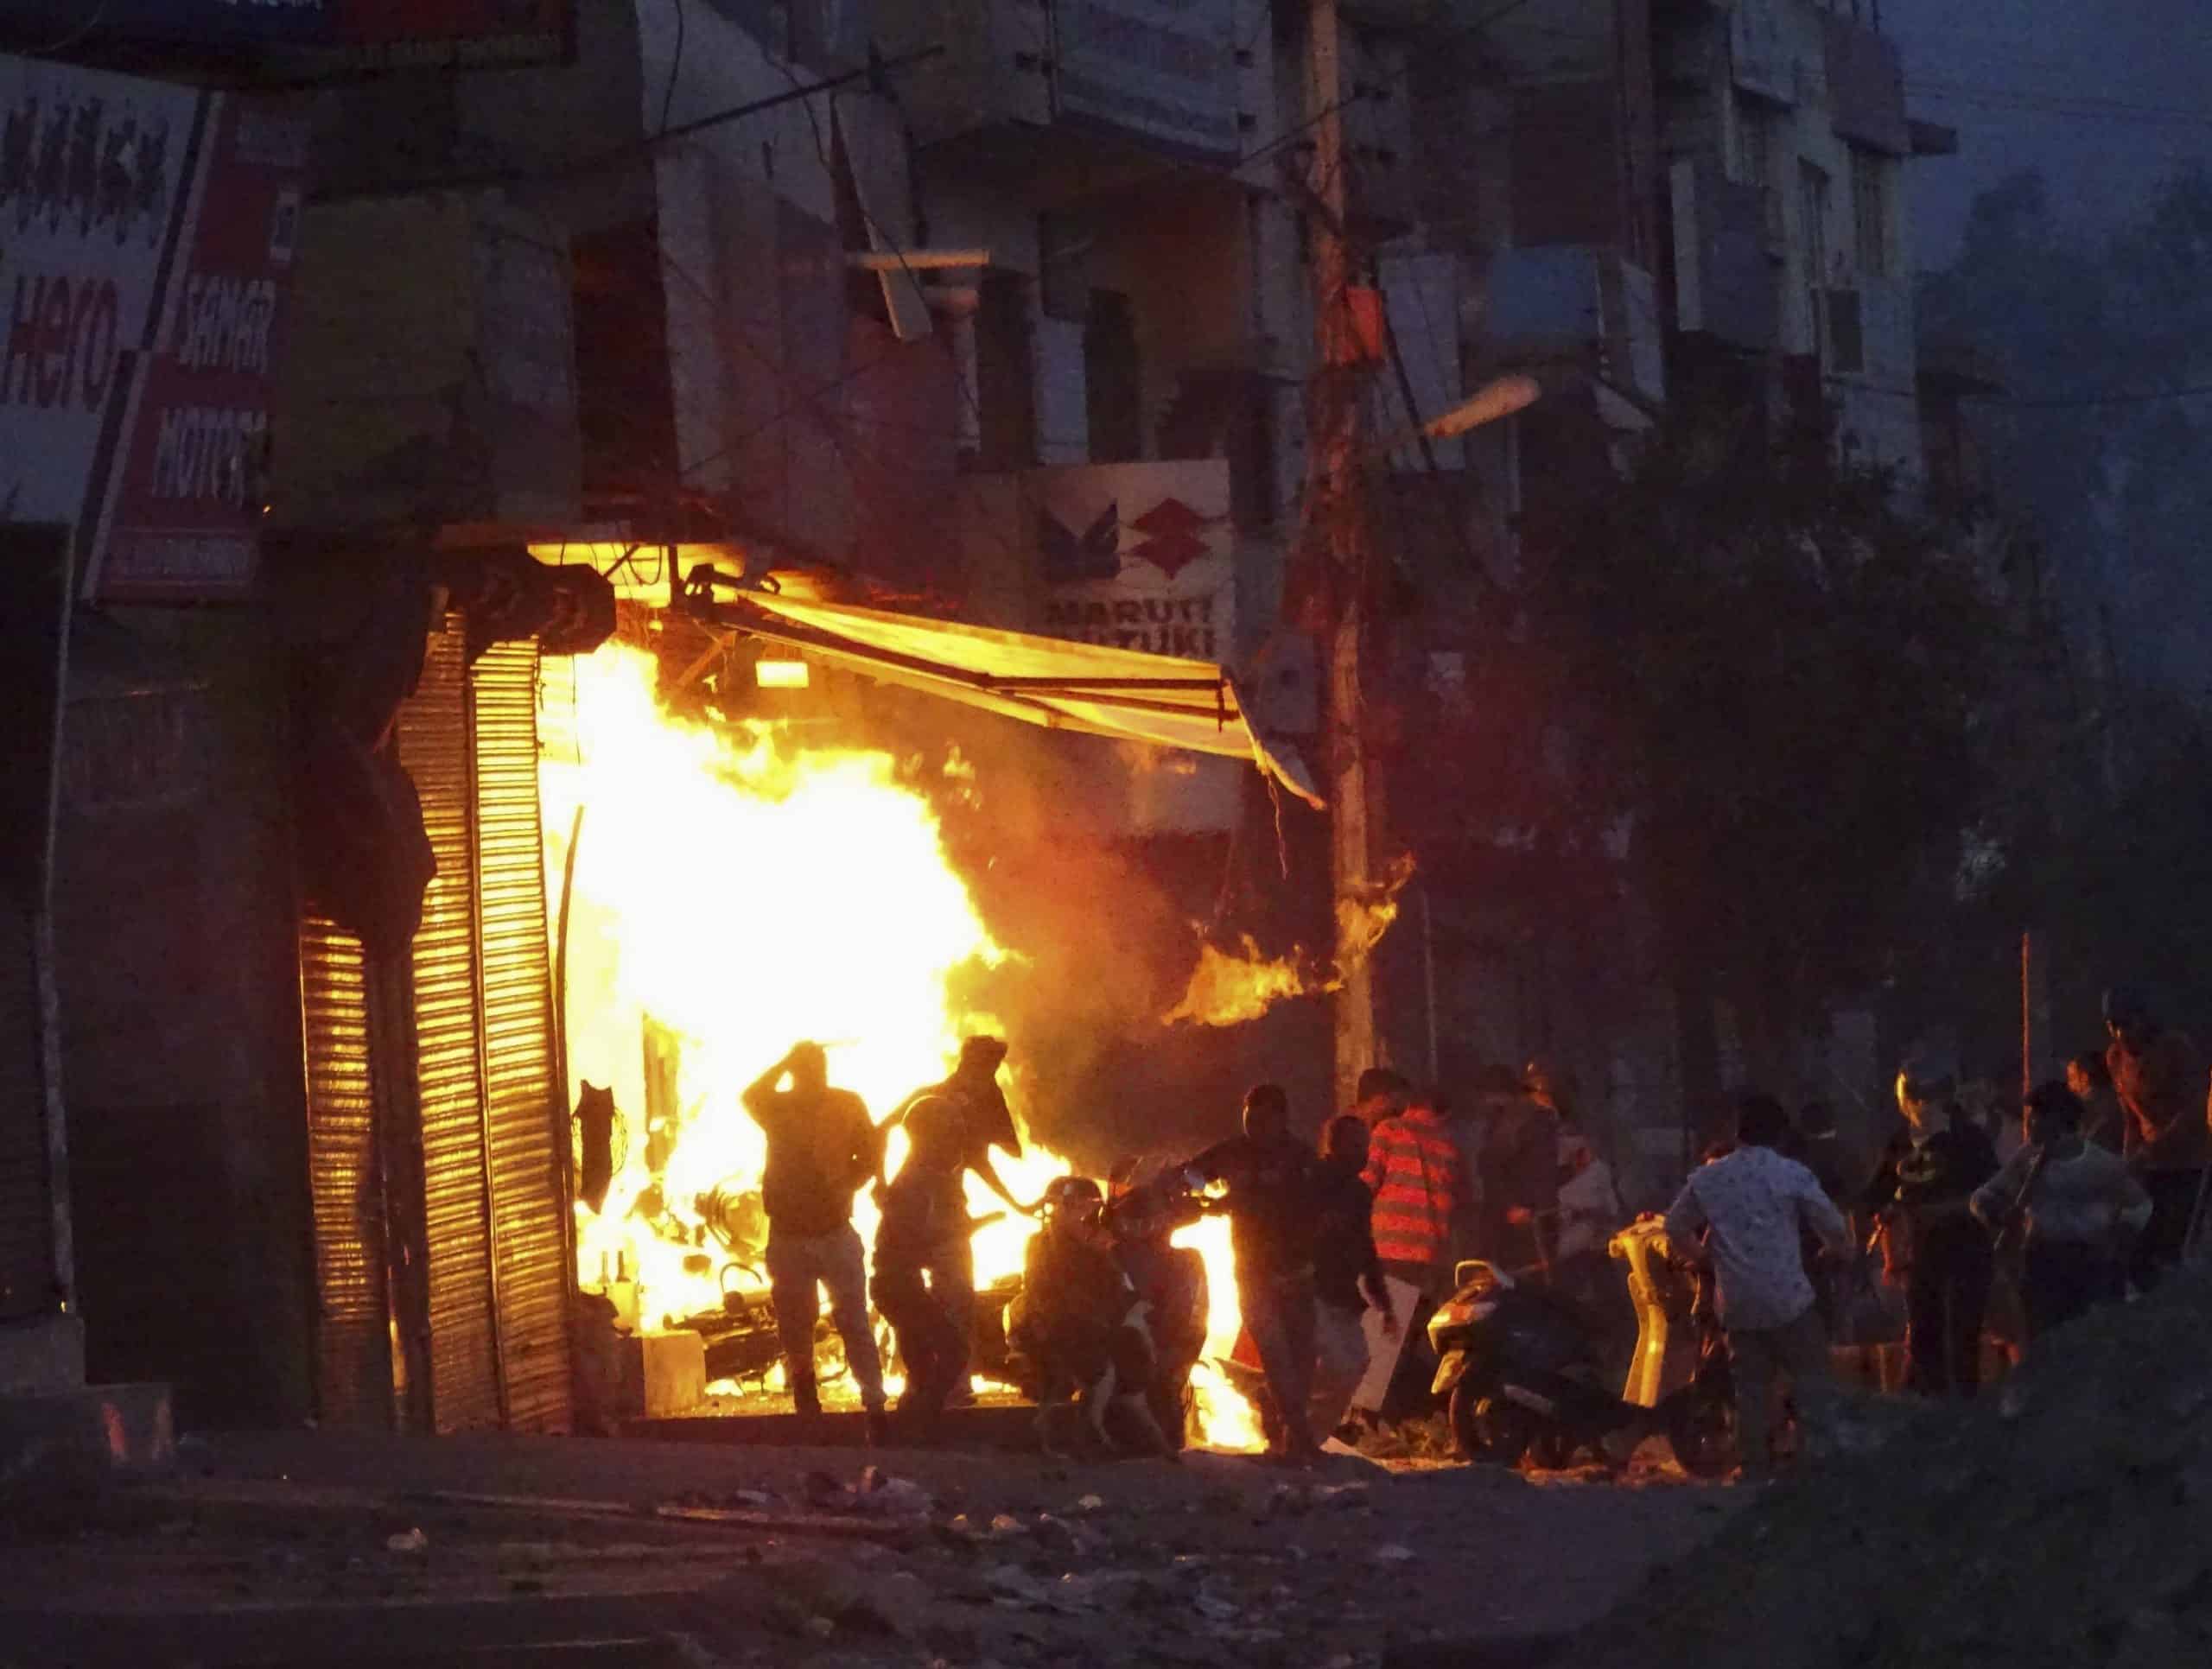 Death toll rises to 22 after Delhi riots during Trump trip